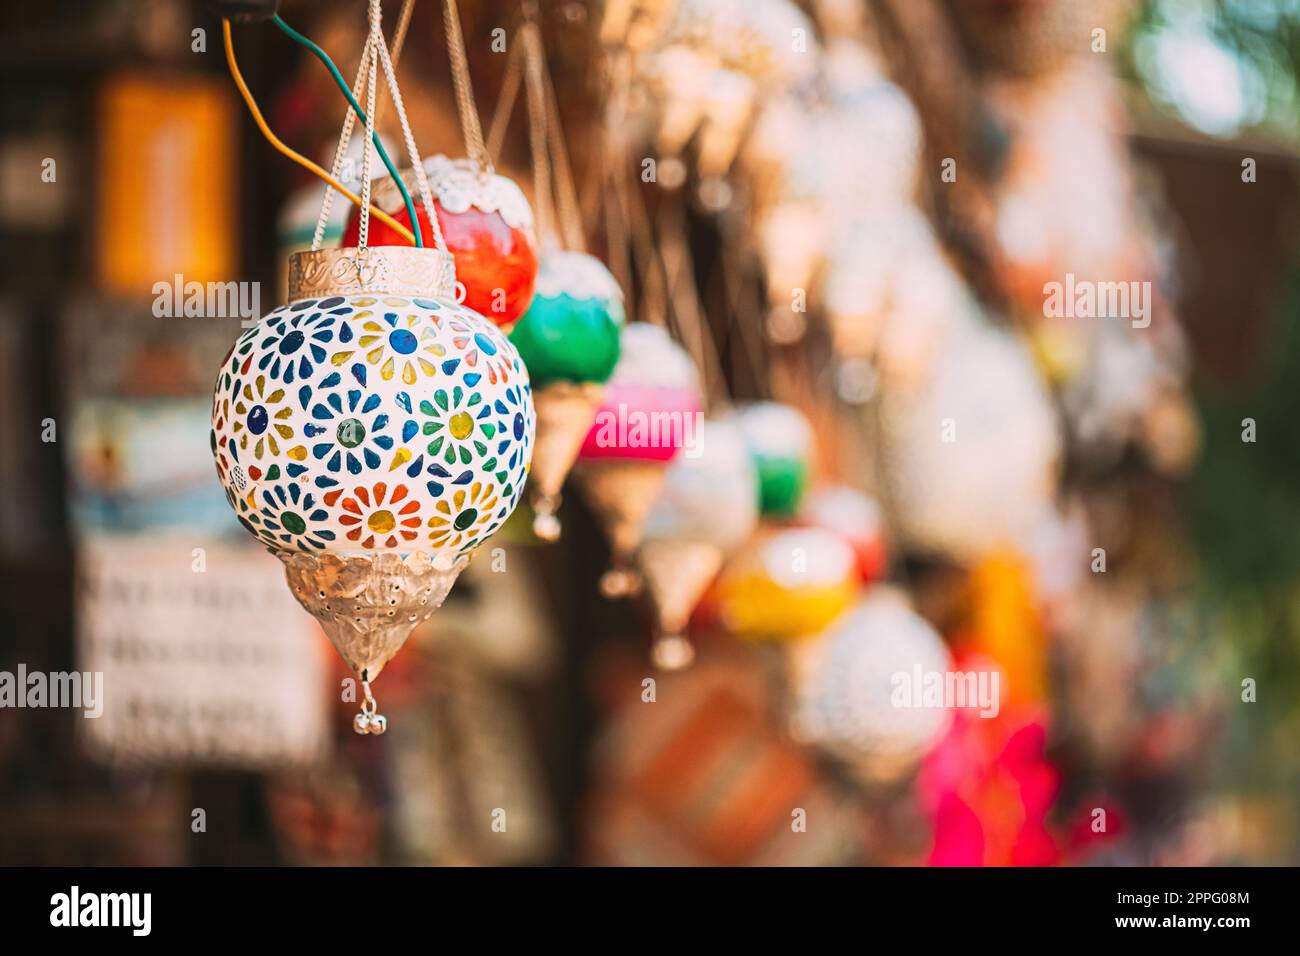 India. Mercado con muchas lámparas y linternas tradicionales de colores hechos a mano de la India. Linternas colgando en Tienda para la Venta. Populares recuerdos de la India Foto de stock